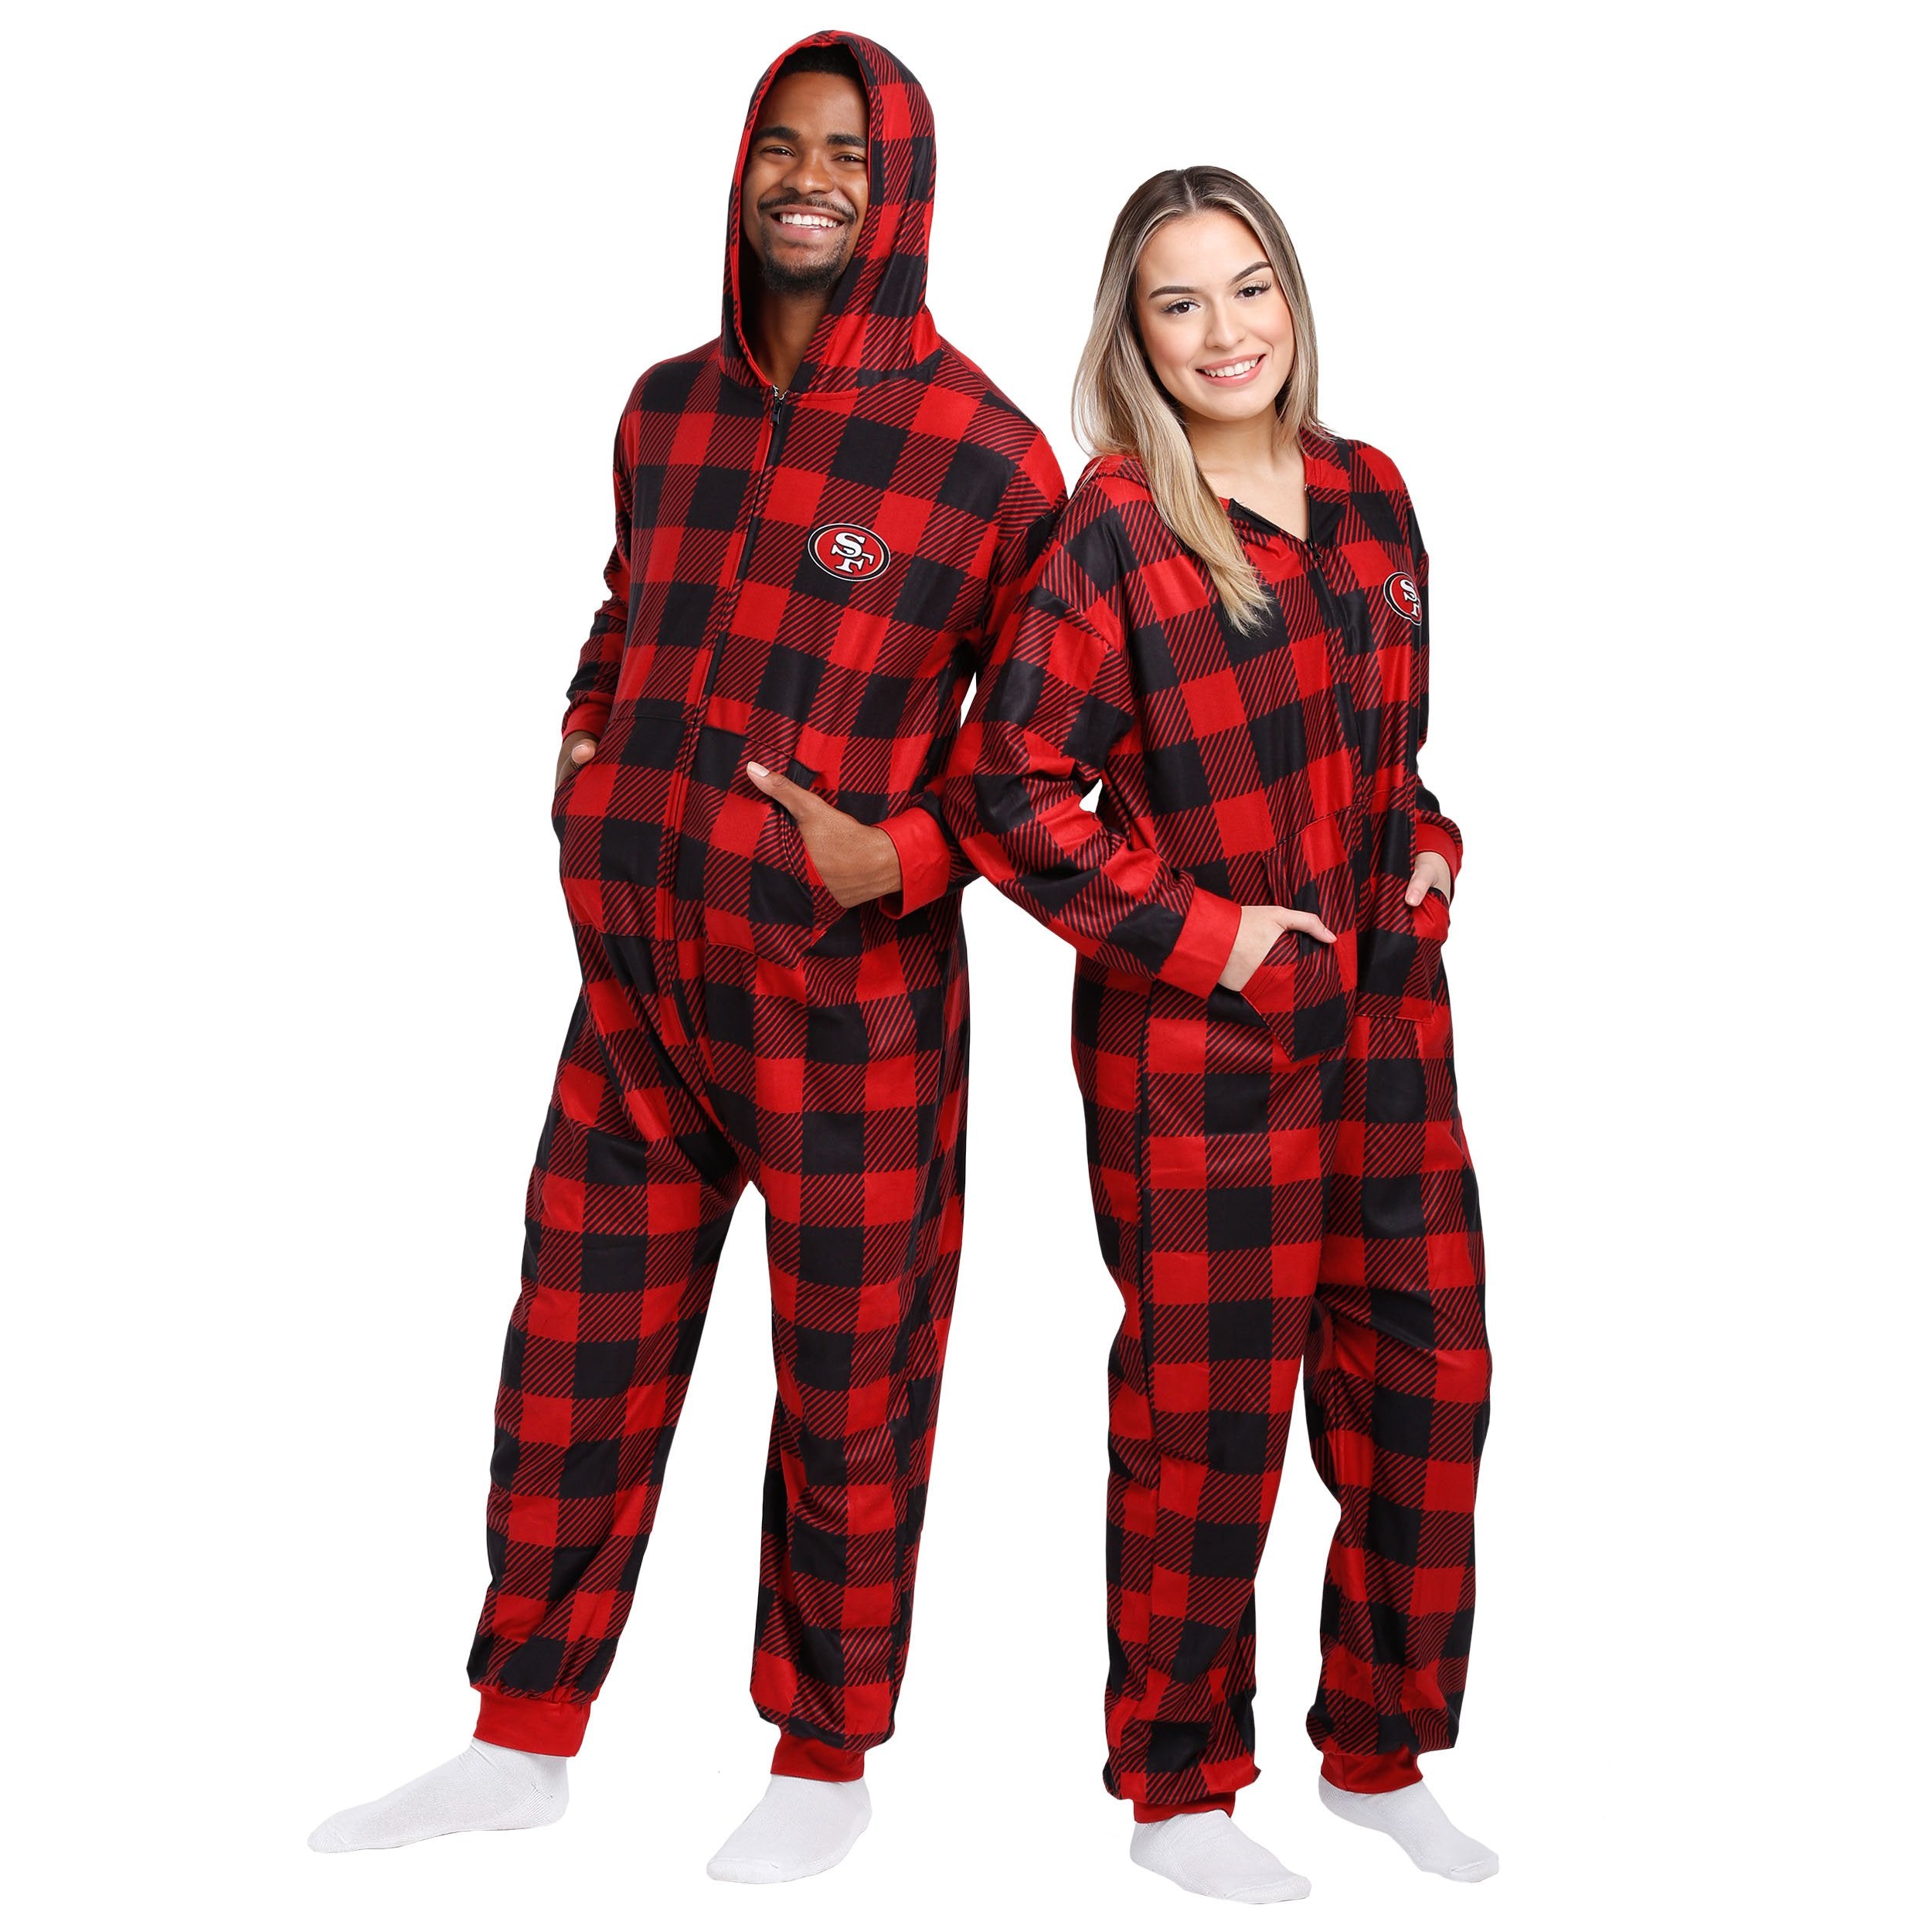 49ers family pajamas